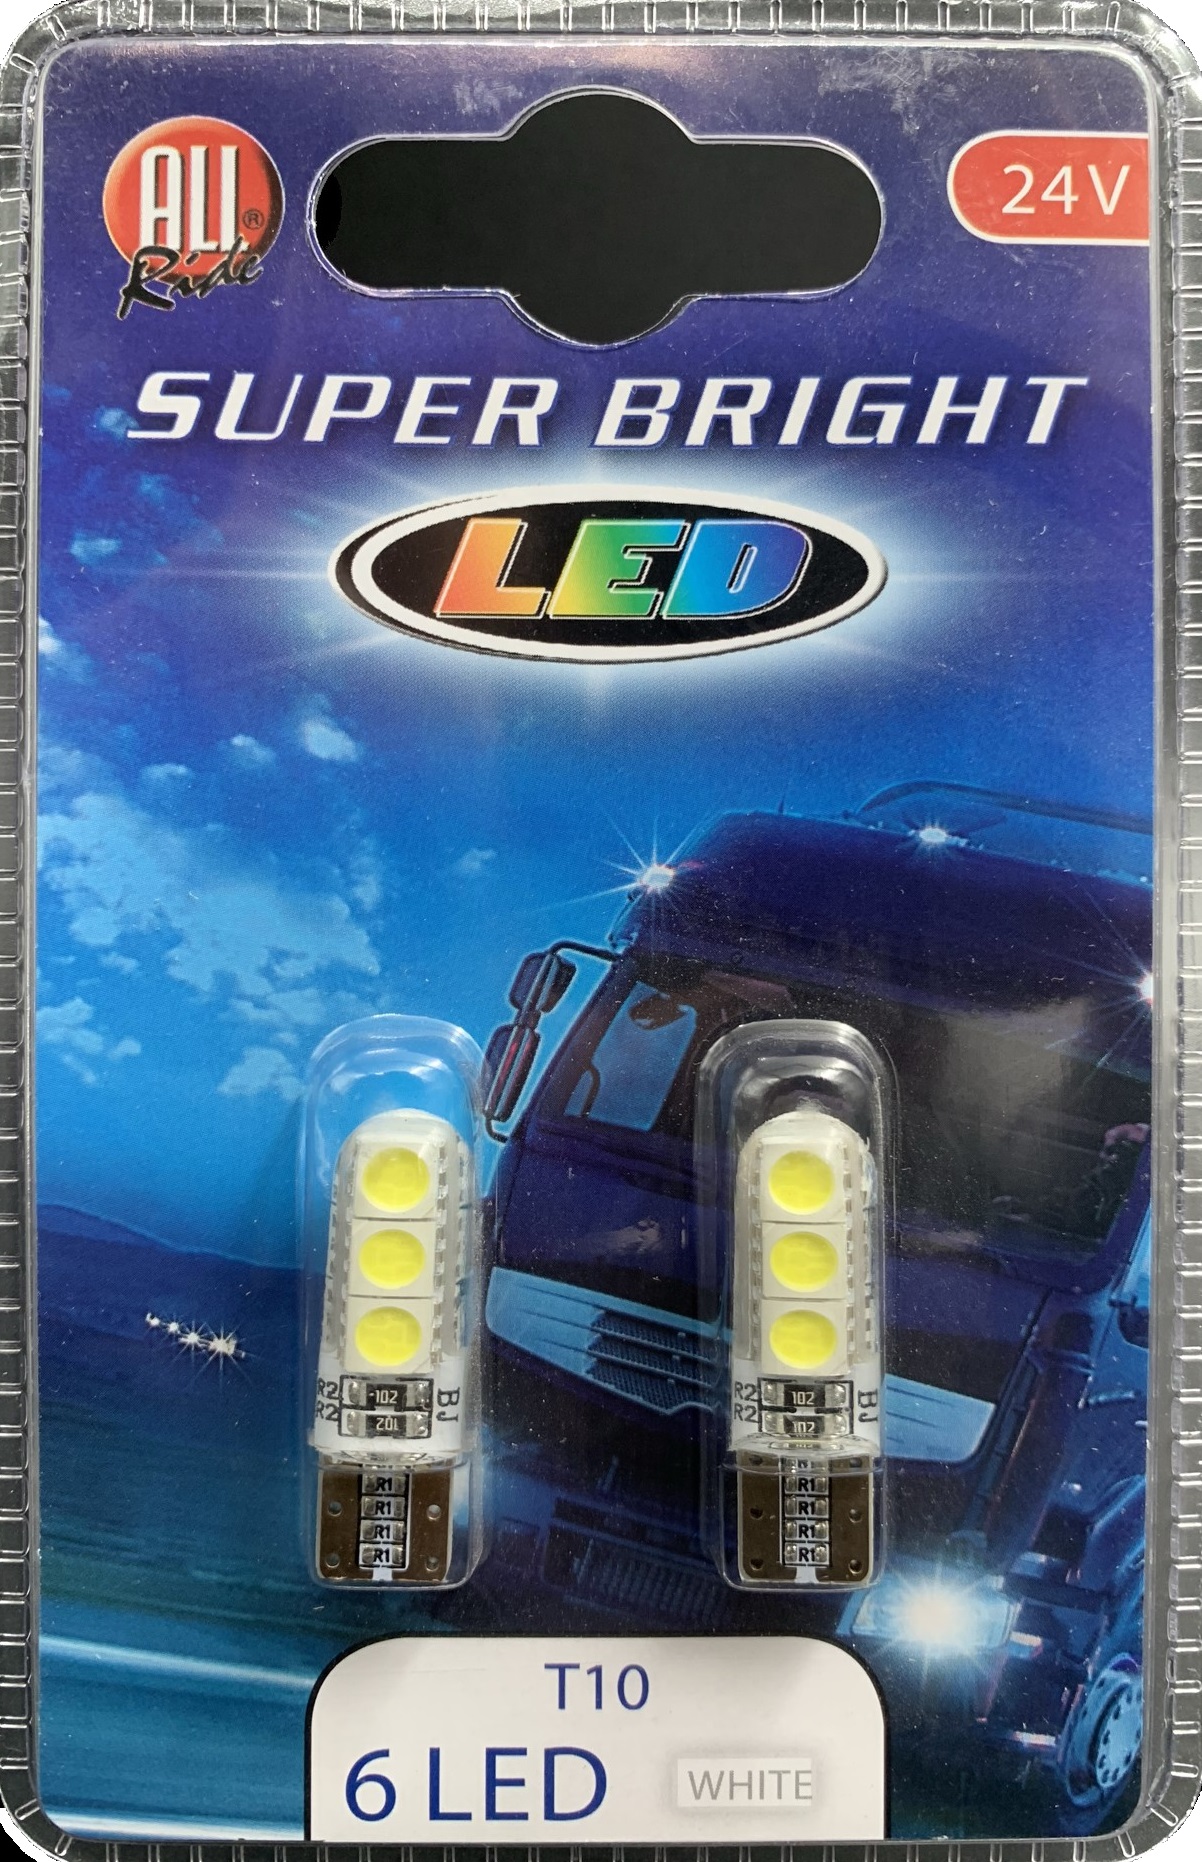 Led lamp All-ride wit 6 led T10 24V